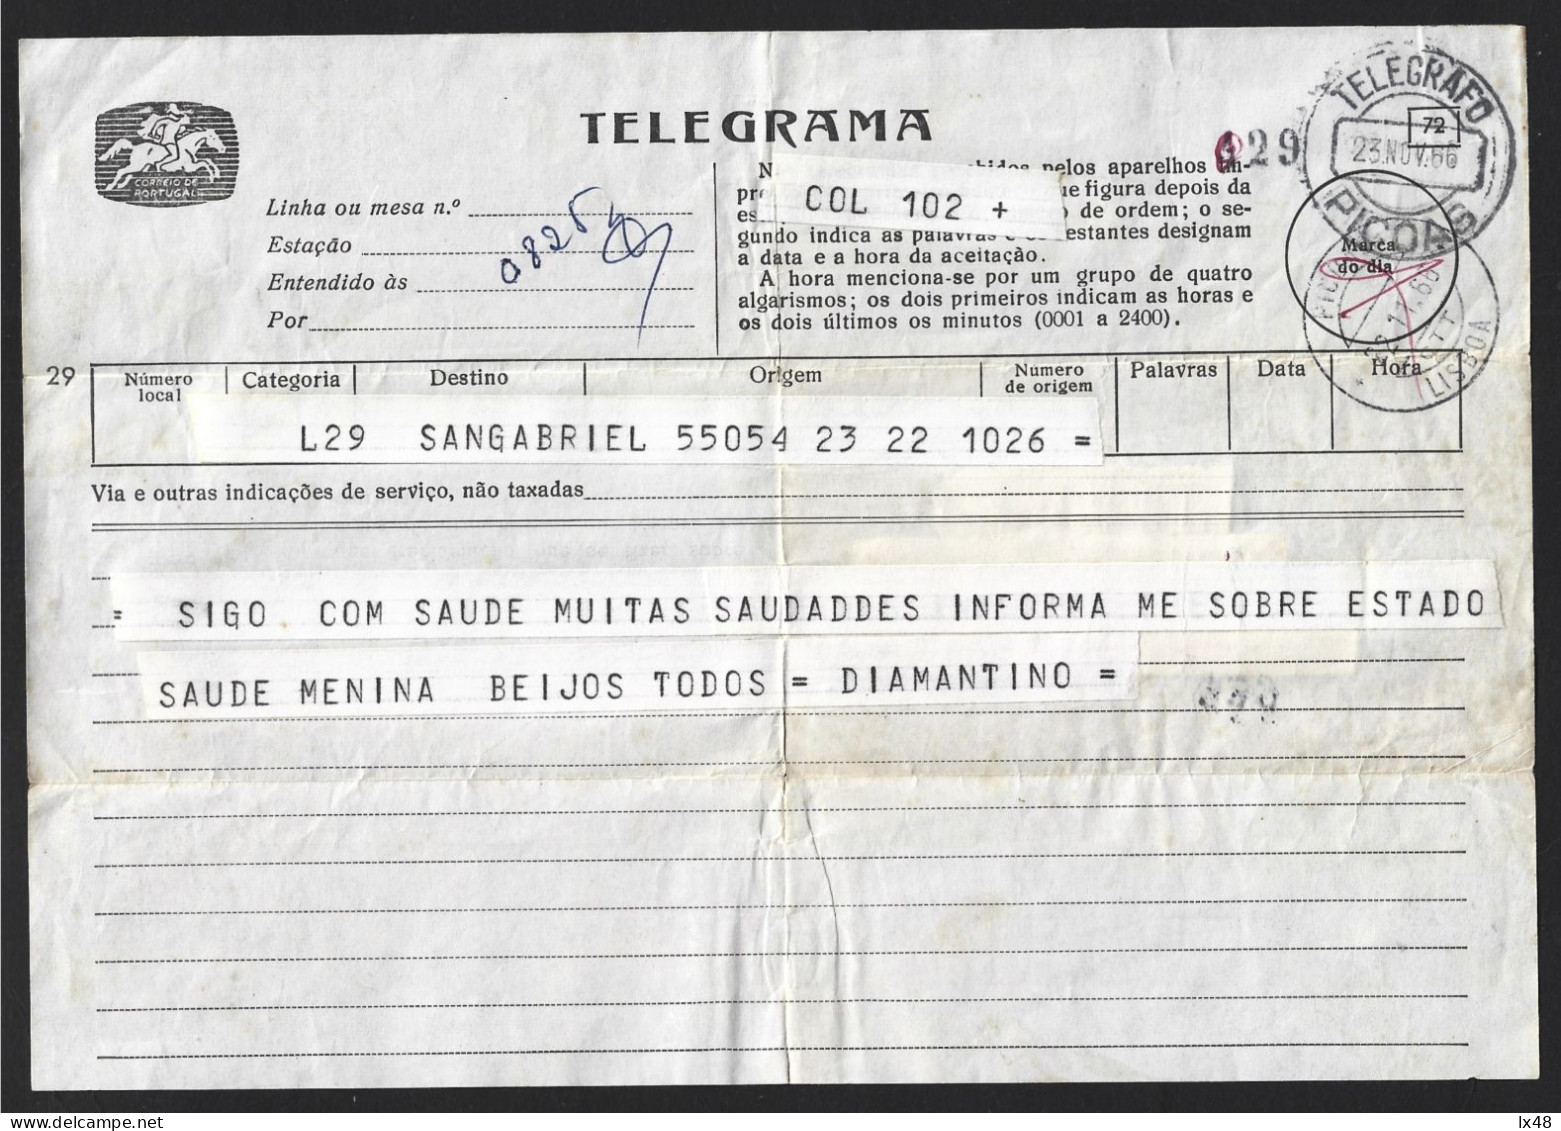 Telegram With Obliteration 'Telegrafo Picoas' Lisbon In 1966. Telegrama Com Obliteração 'Telegrafo Picoas' Lisboa Em 196 - Cartas & Documentos